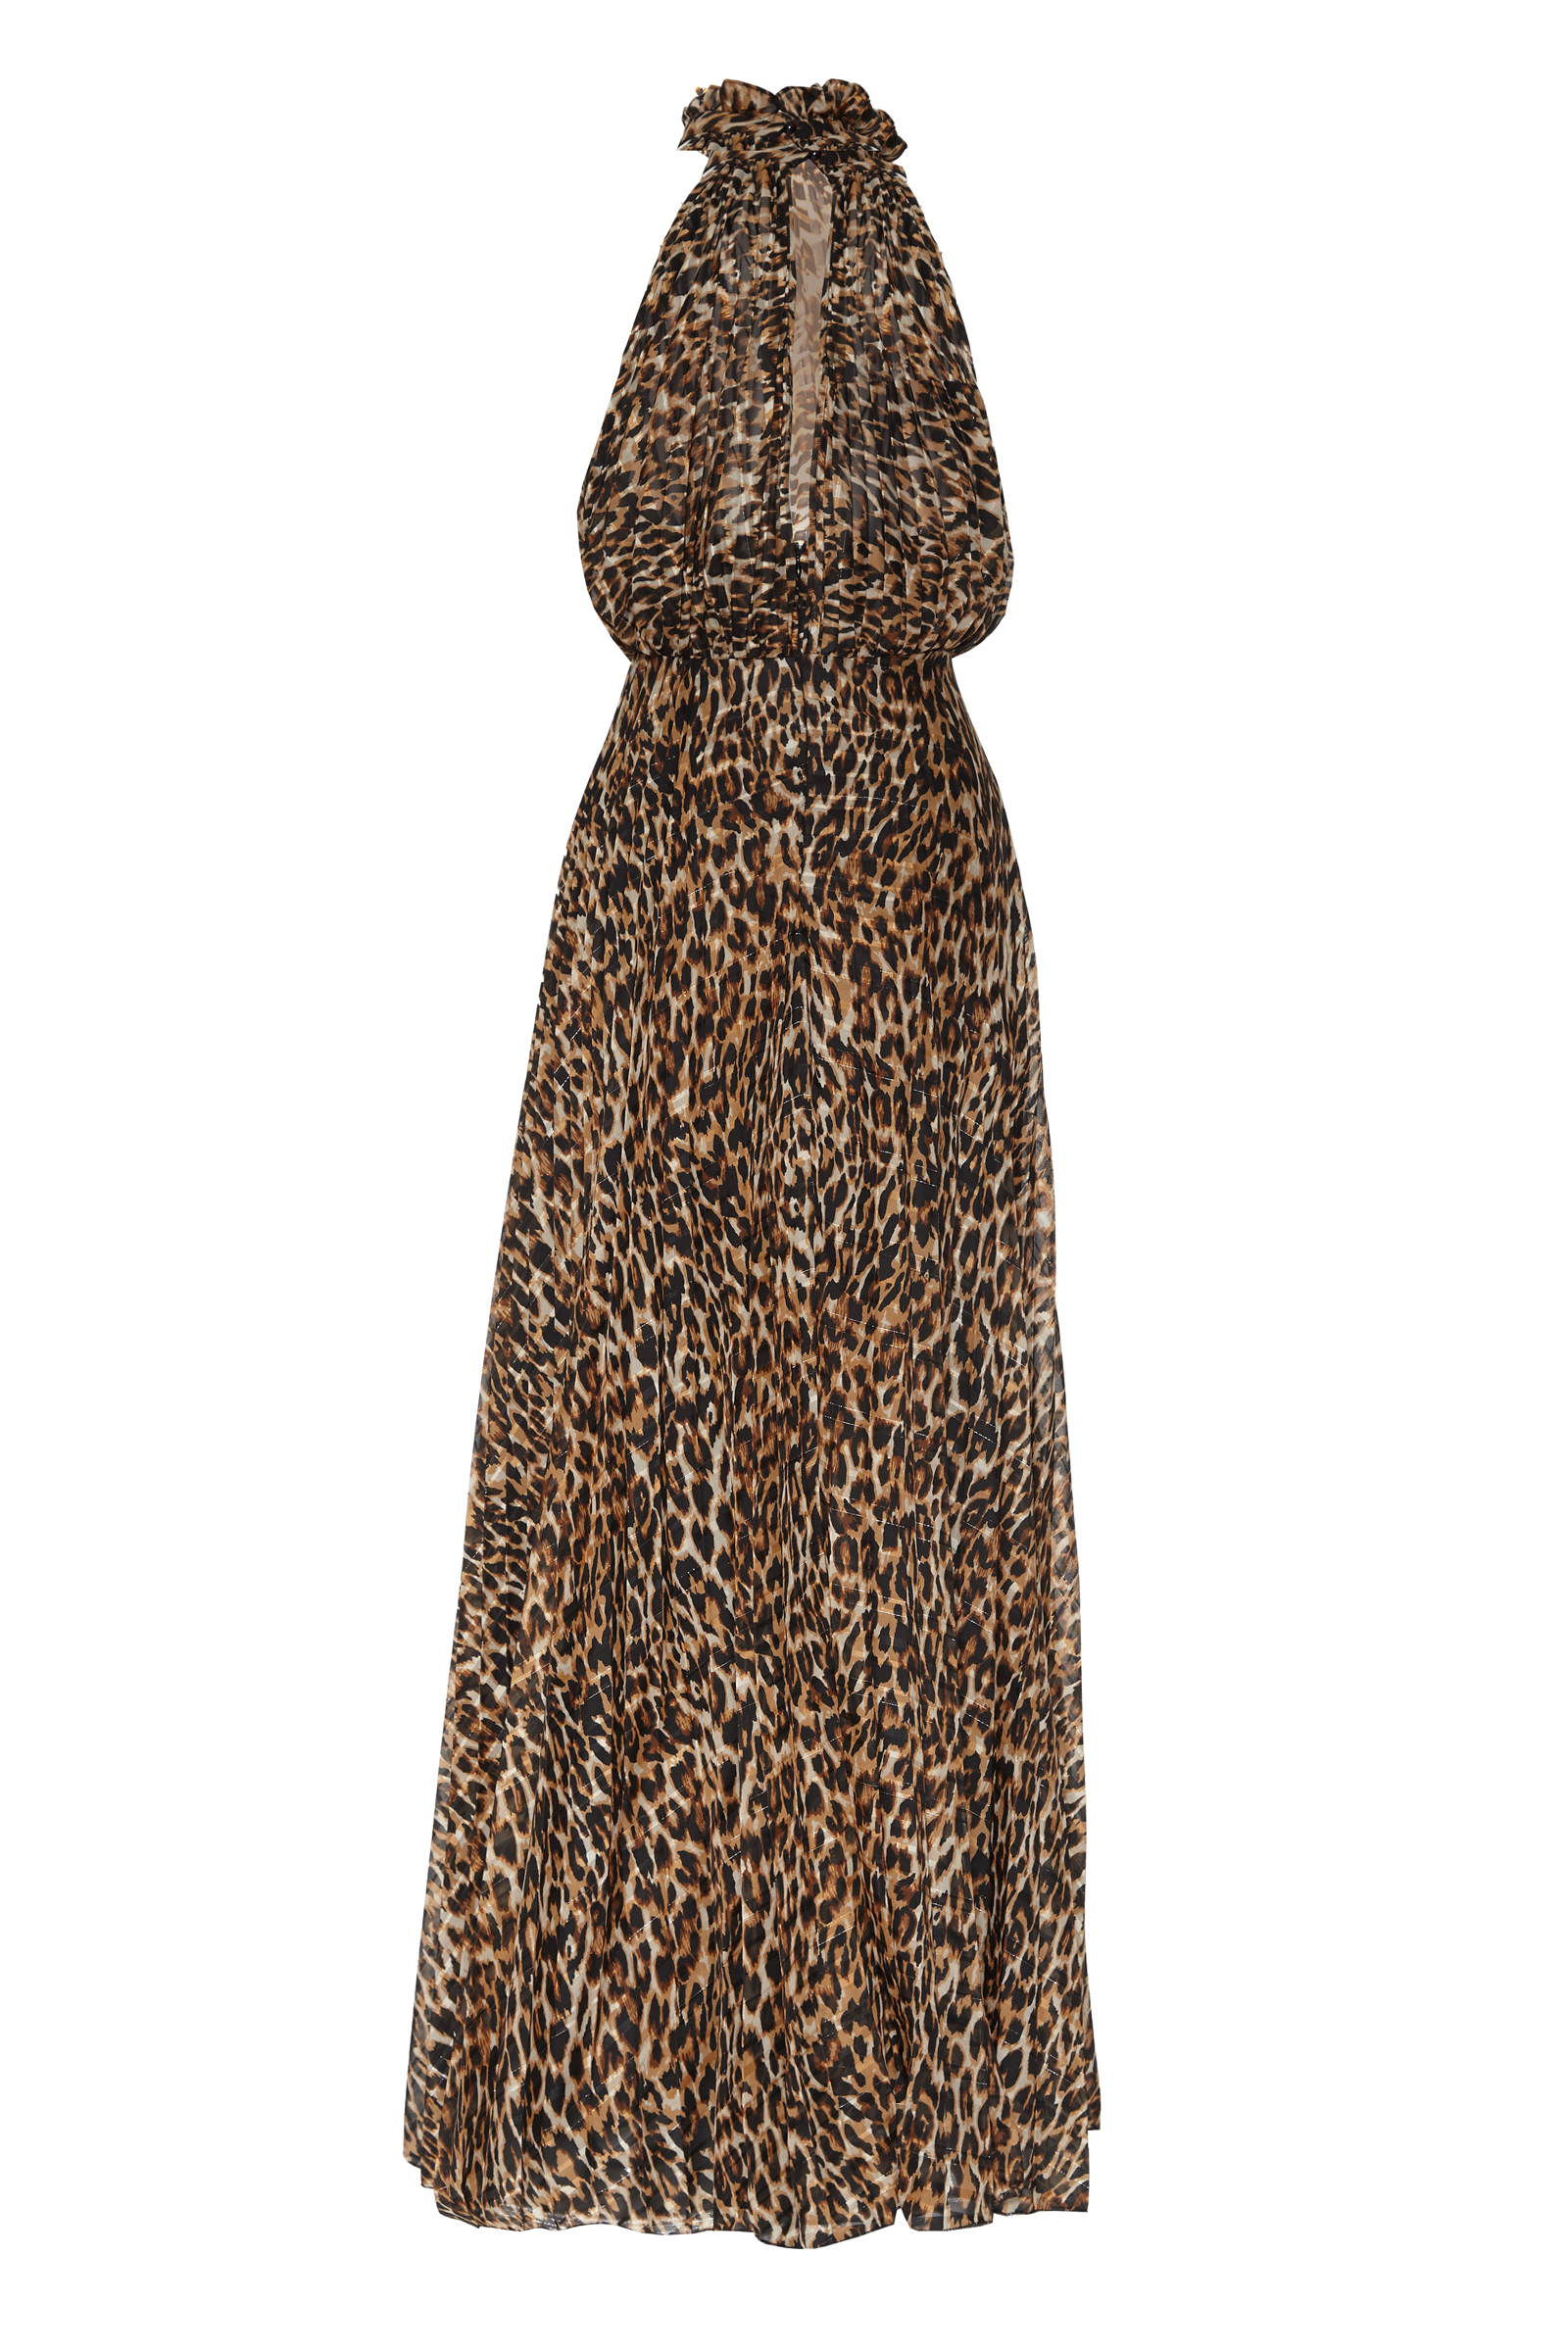 Leopard Chiffon Sleeveless Dress